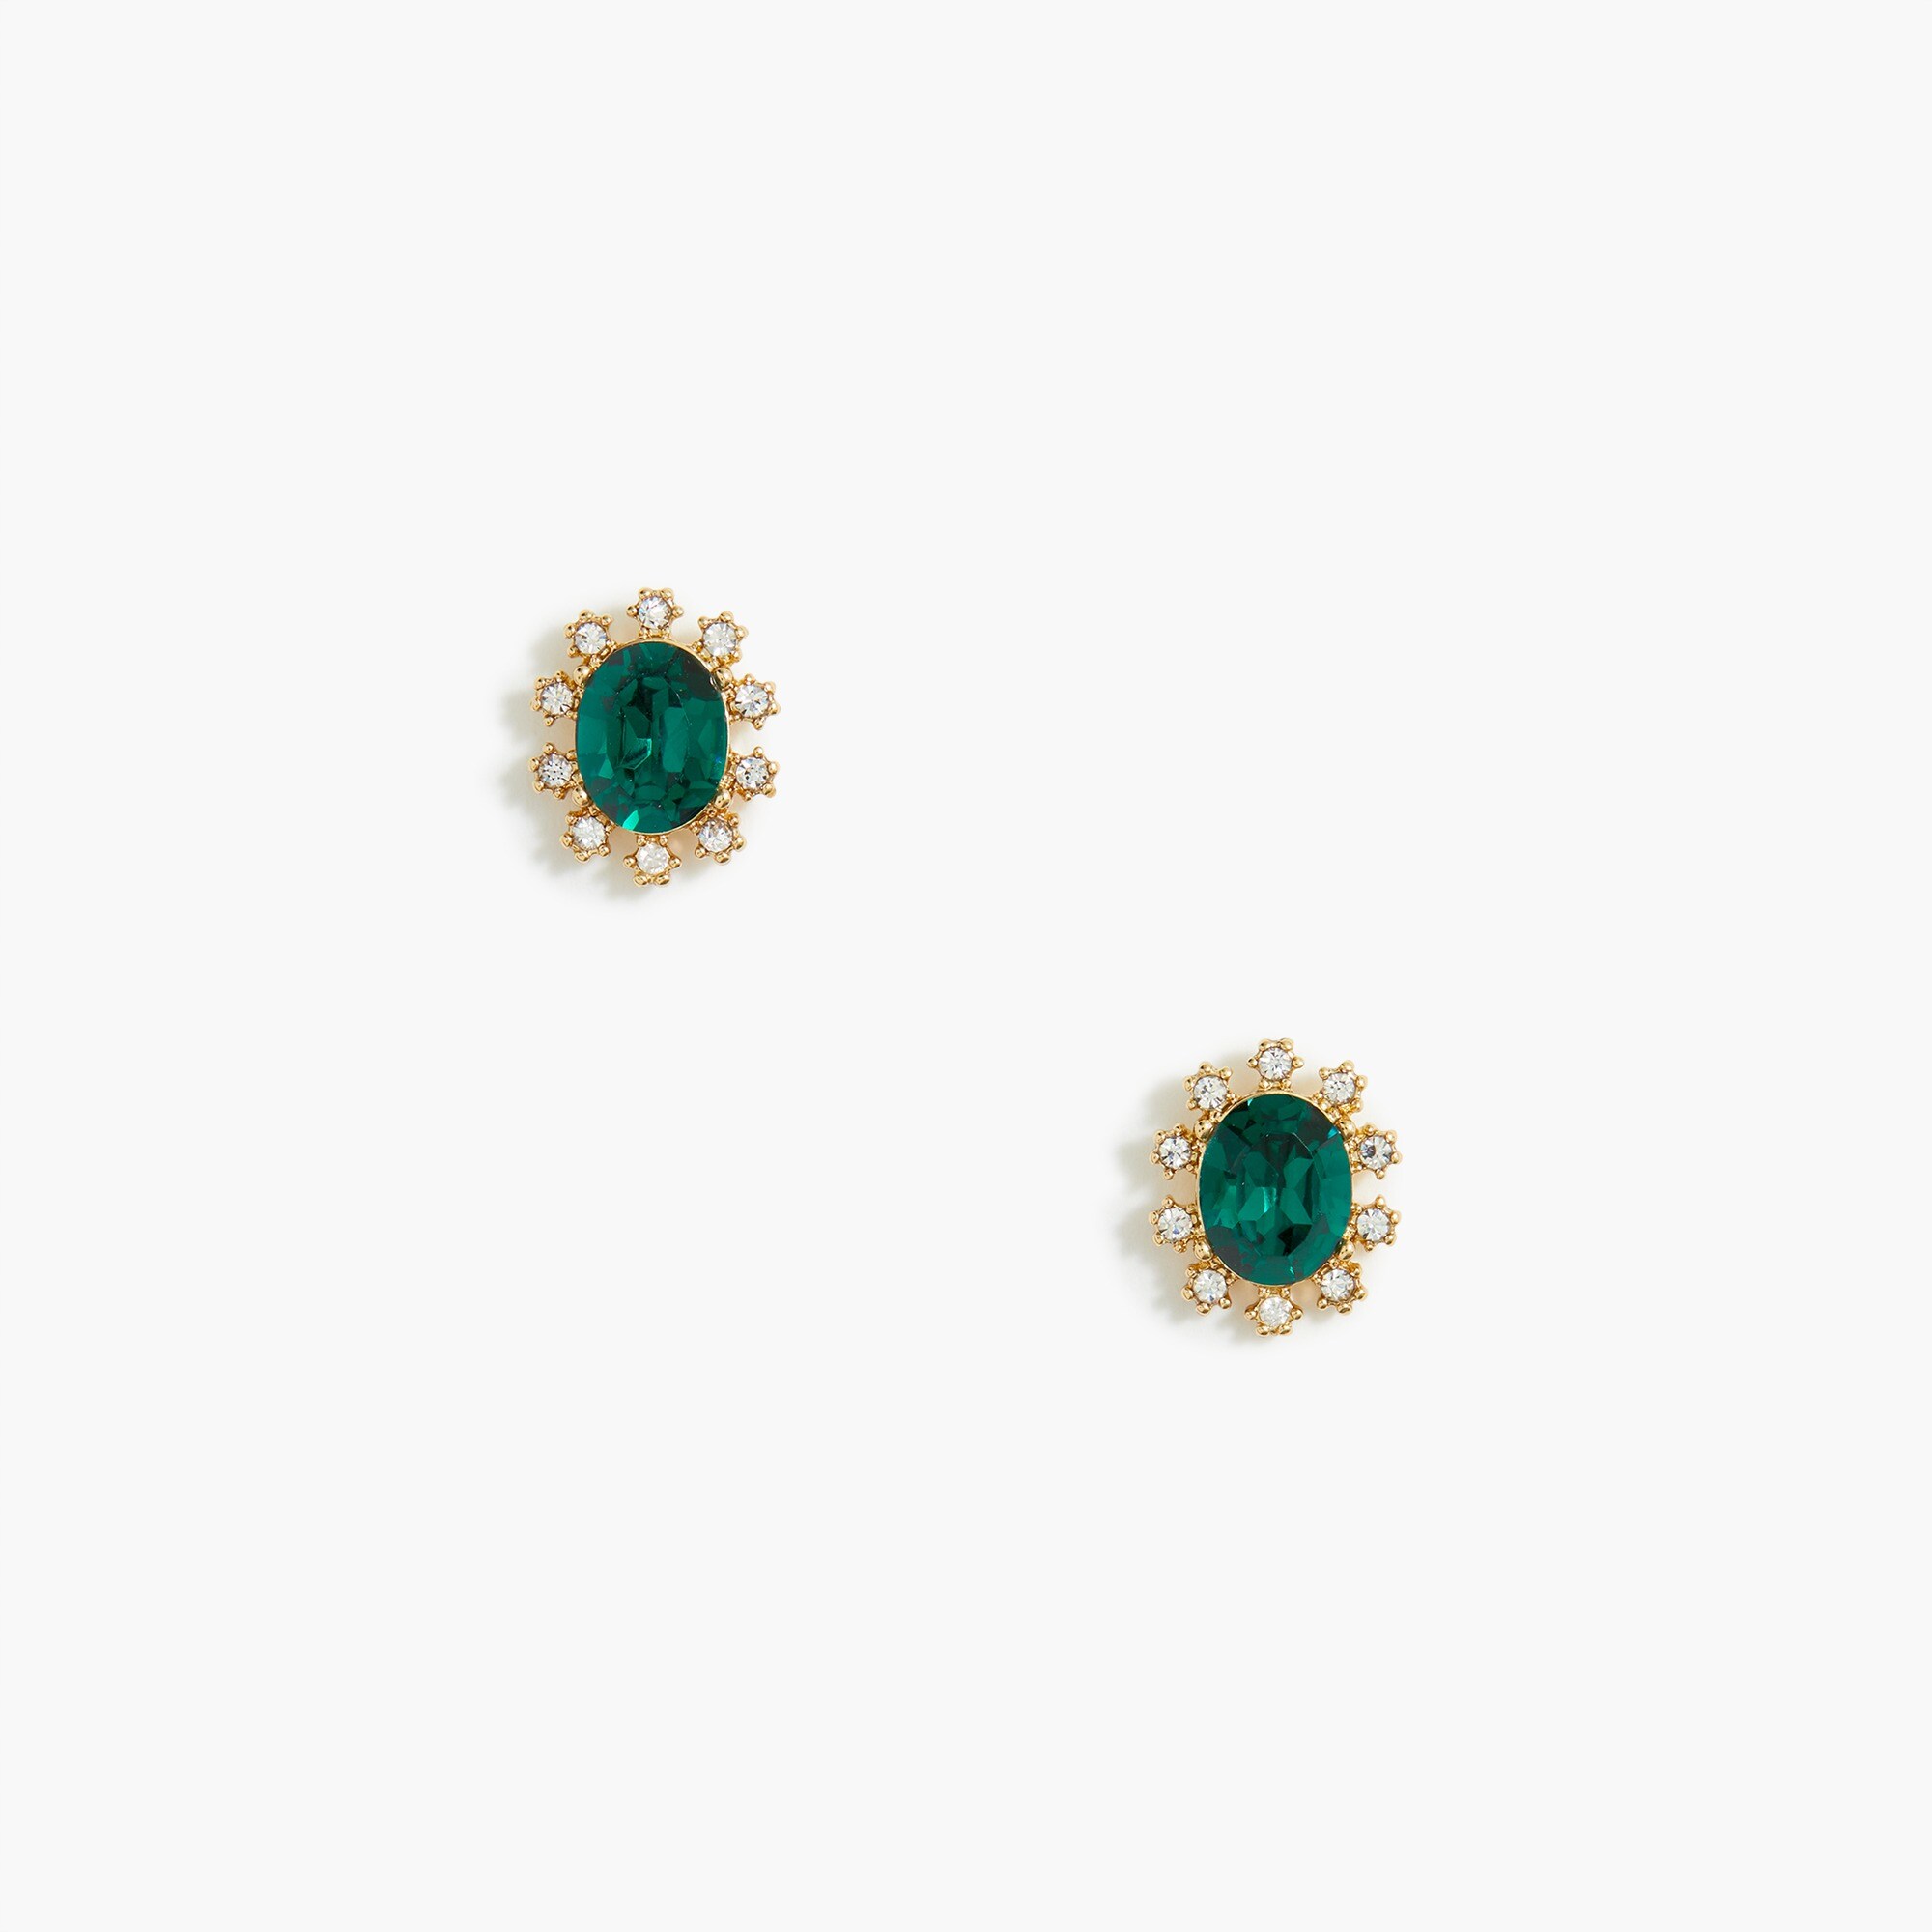  Oval gem earrings